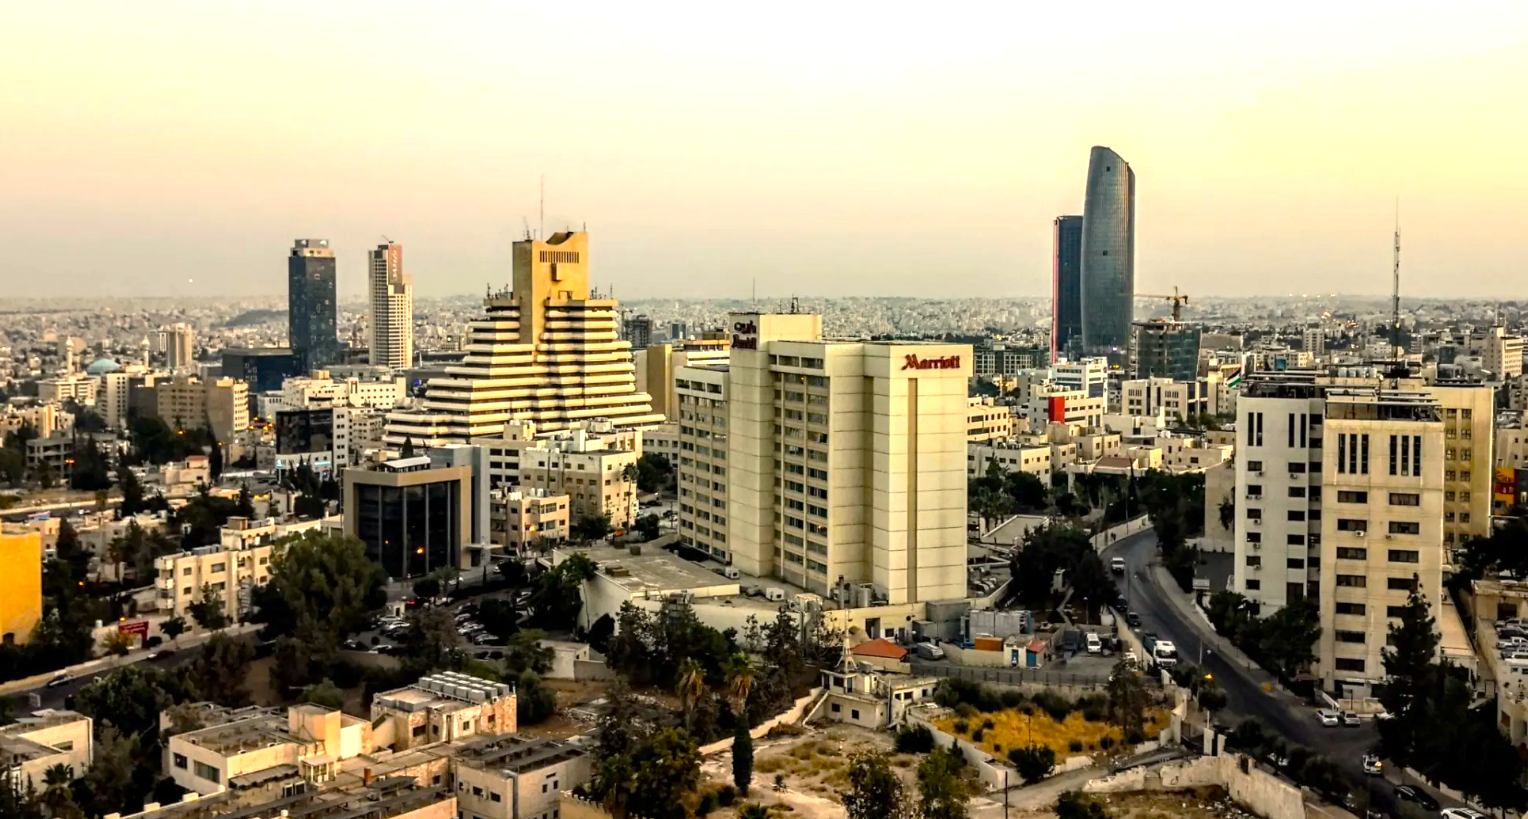 the capital of Jordan - Amman